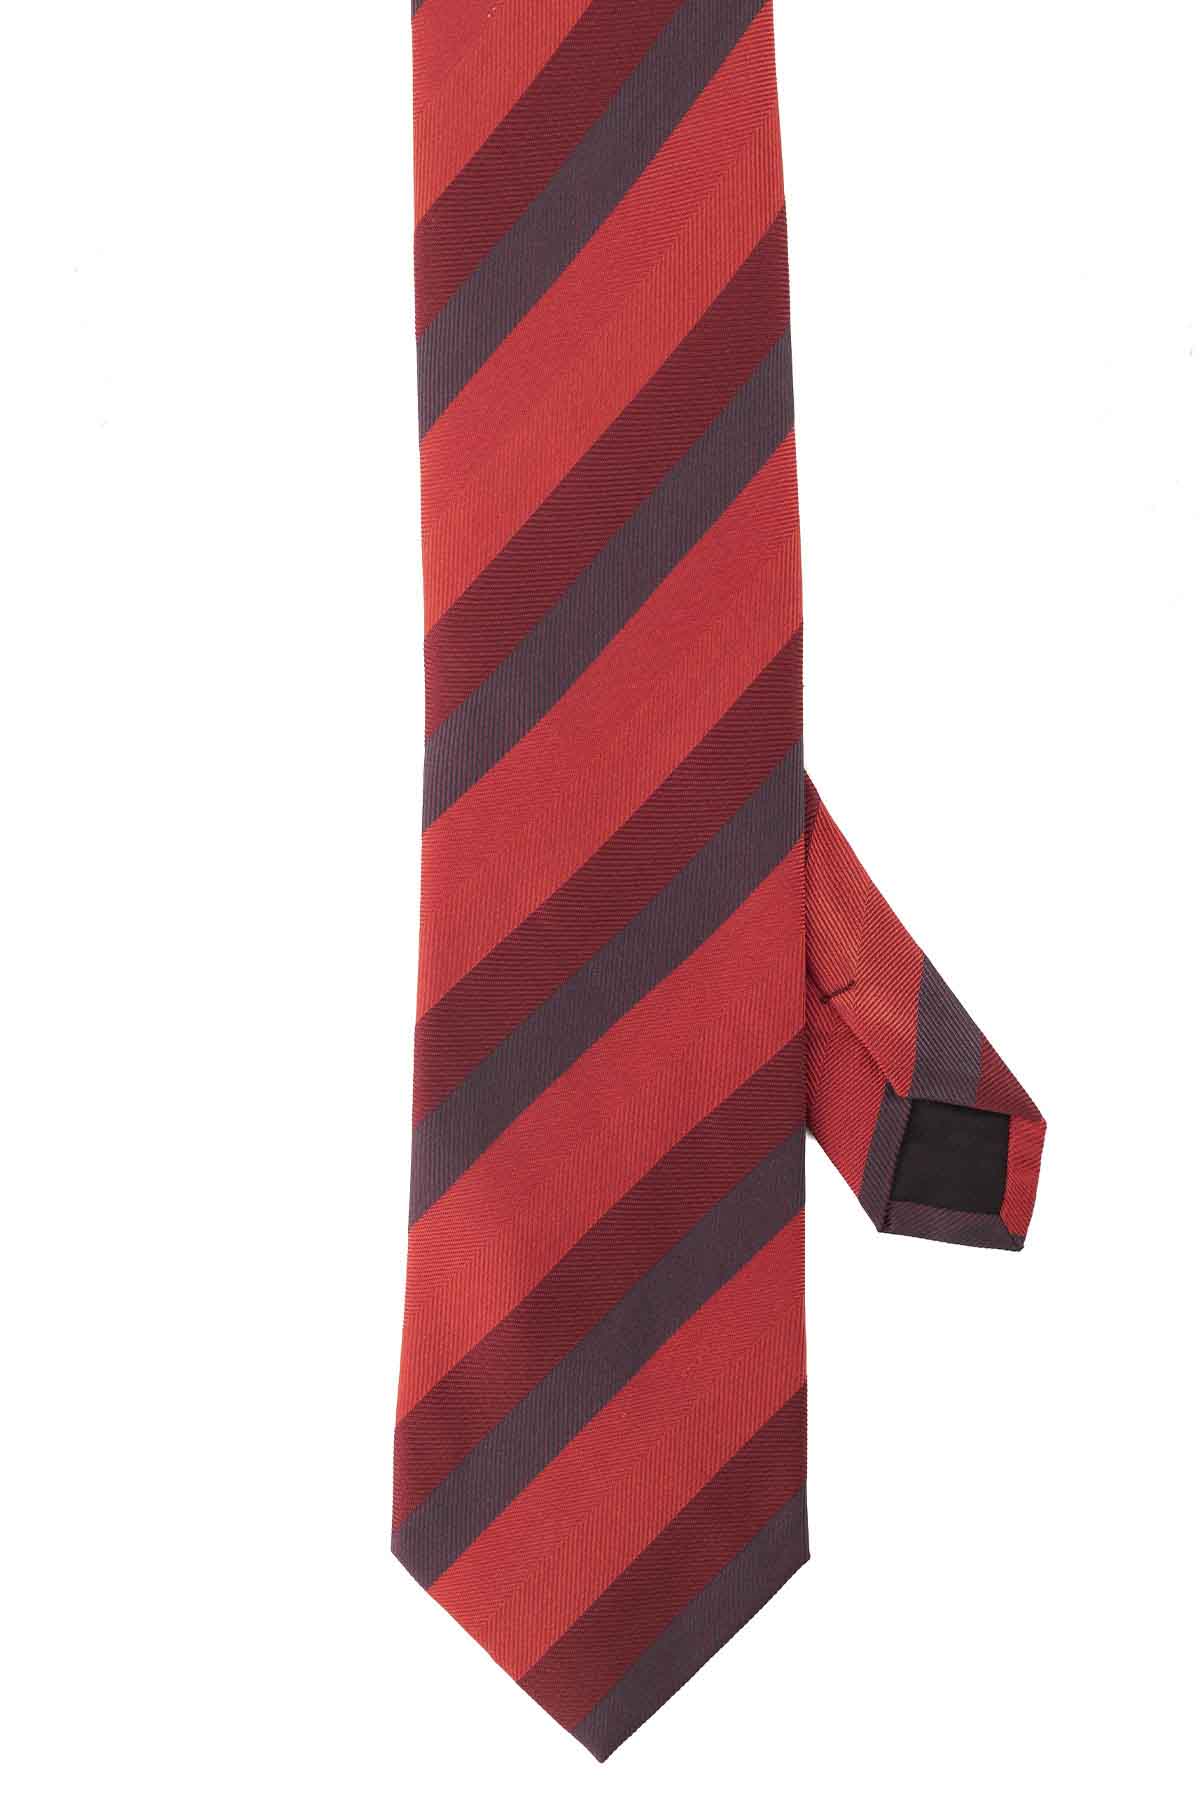 Corbata Calderoni Color Rojo Cereza